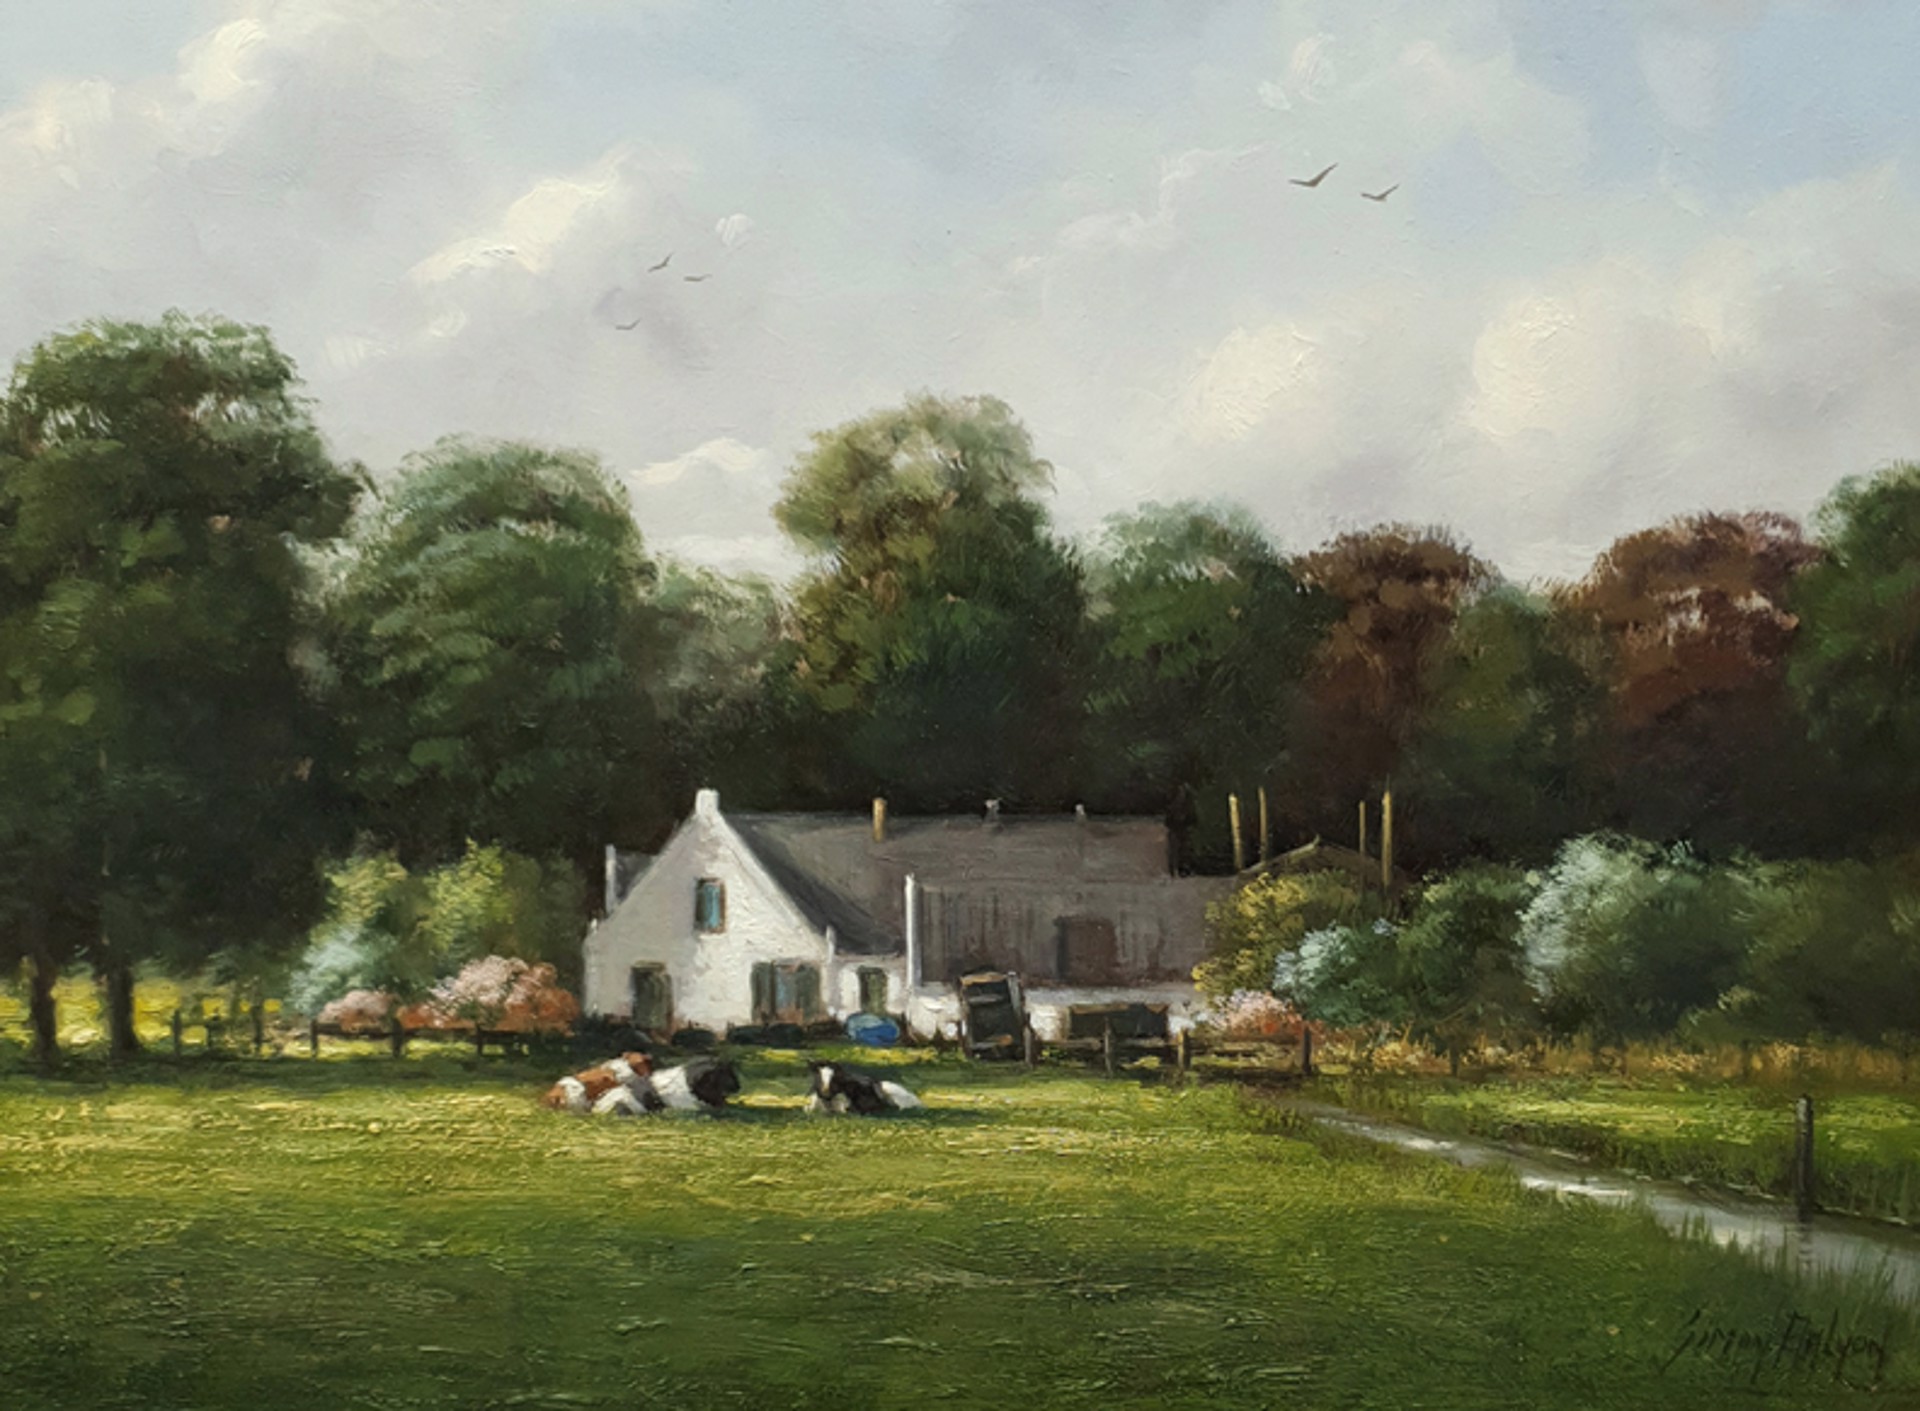 The White Farmhouse by Simon Balyon